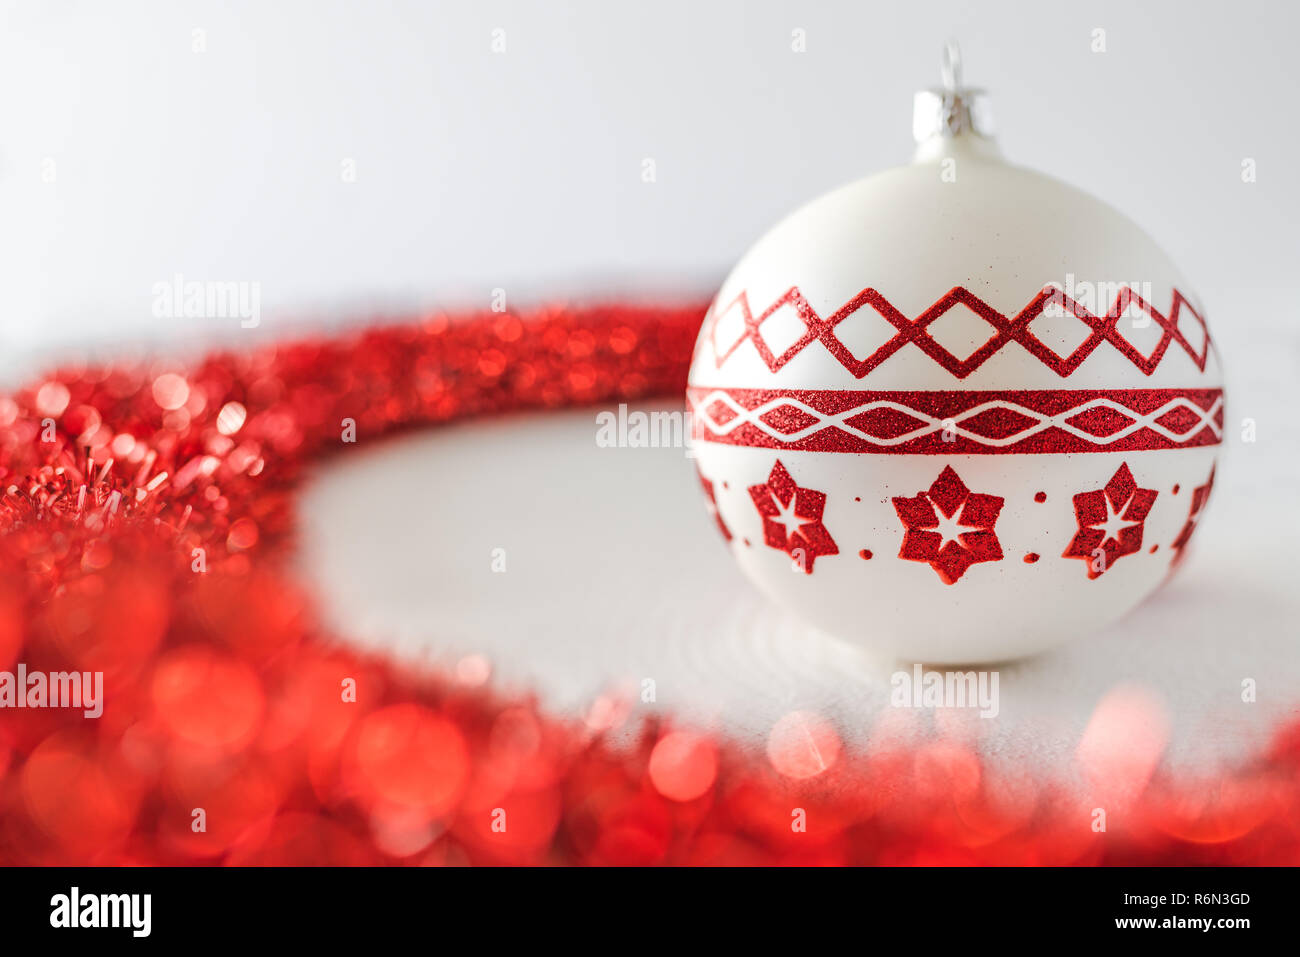 Sfondi Natalizi Rossi.Decorazioni Di Natale Bel Rosso E Bianco A Sfere Di Vetro E Nastro Rosso Su Sfondo Bianco Foto Stock Alamy